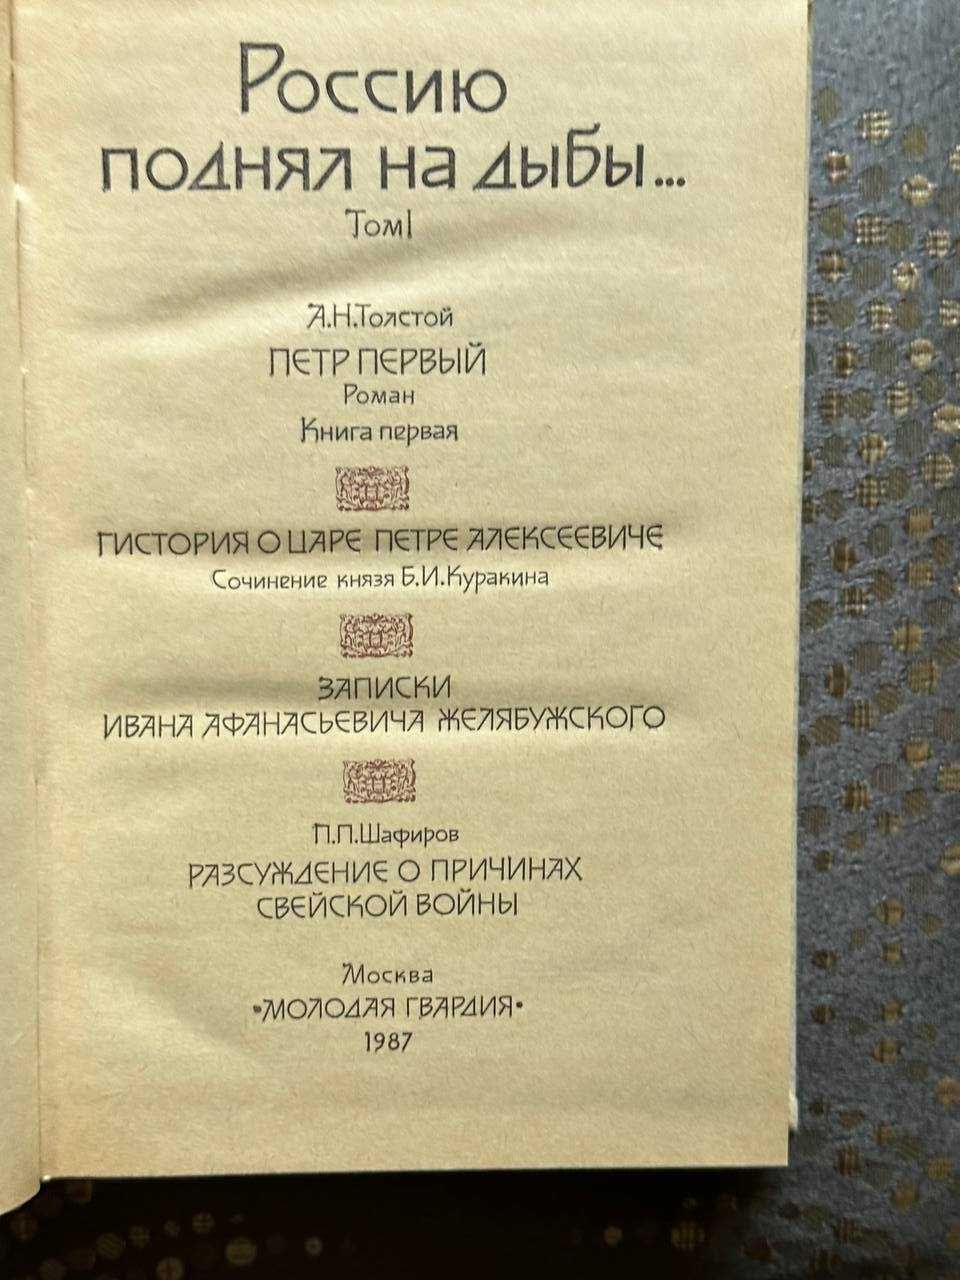 "Россию поднял на дыбы" в 2 томах